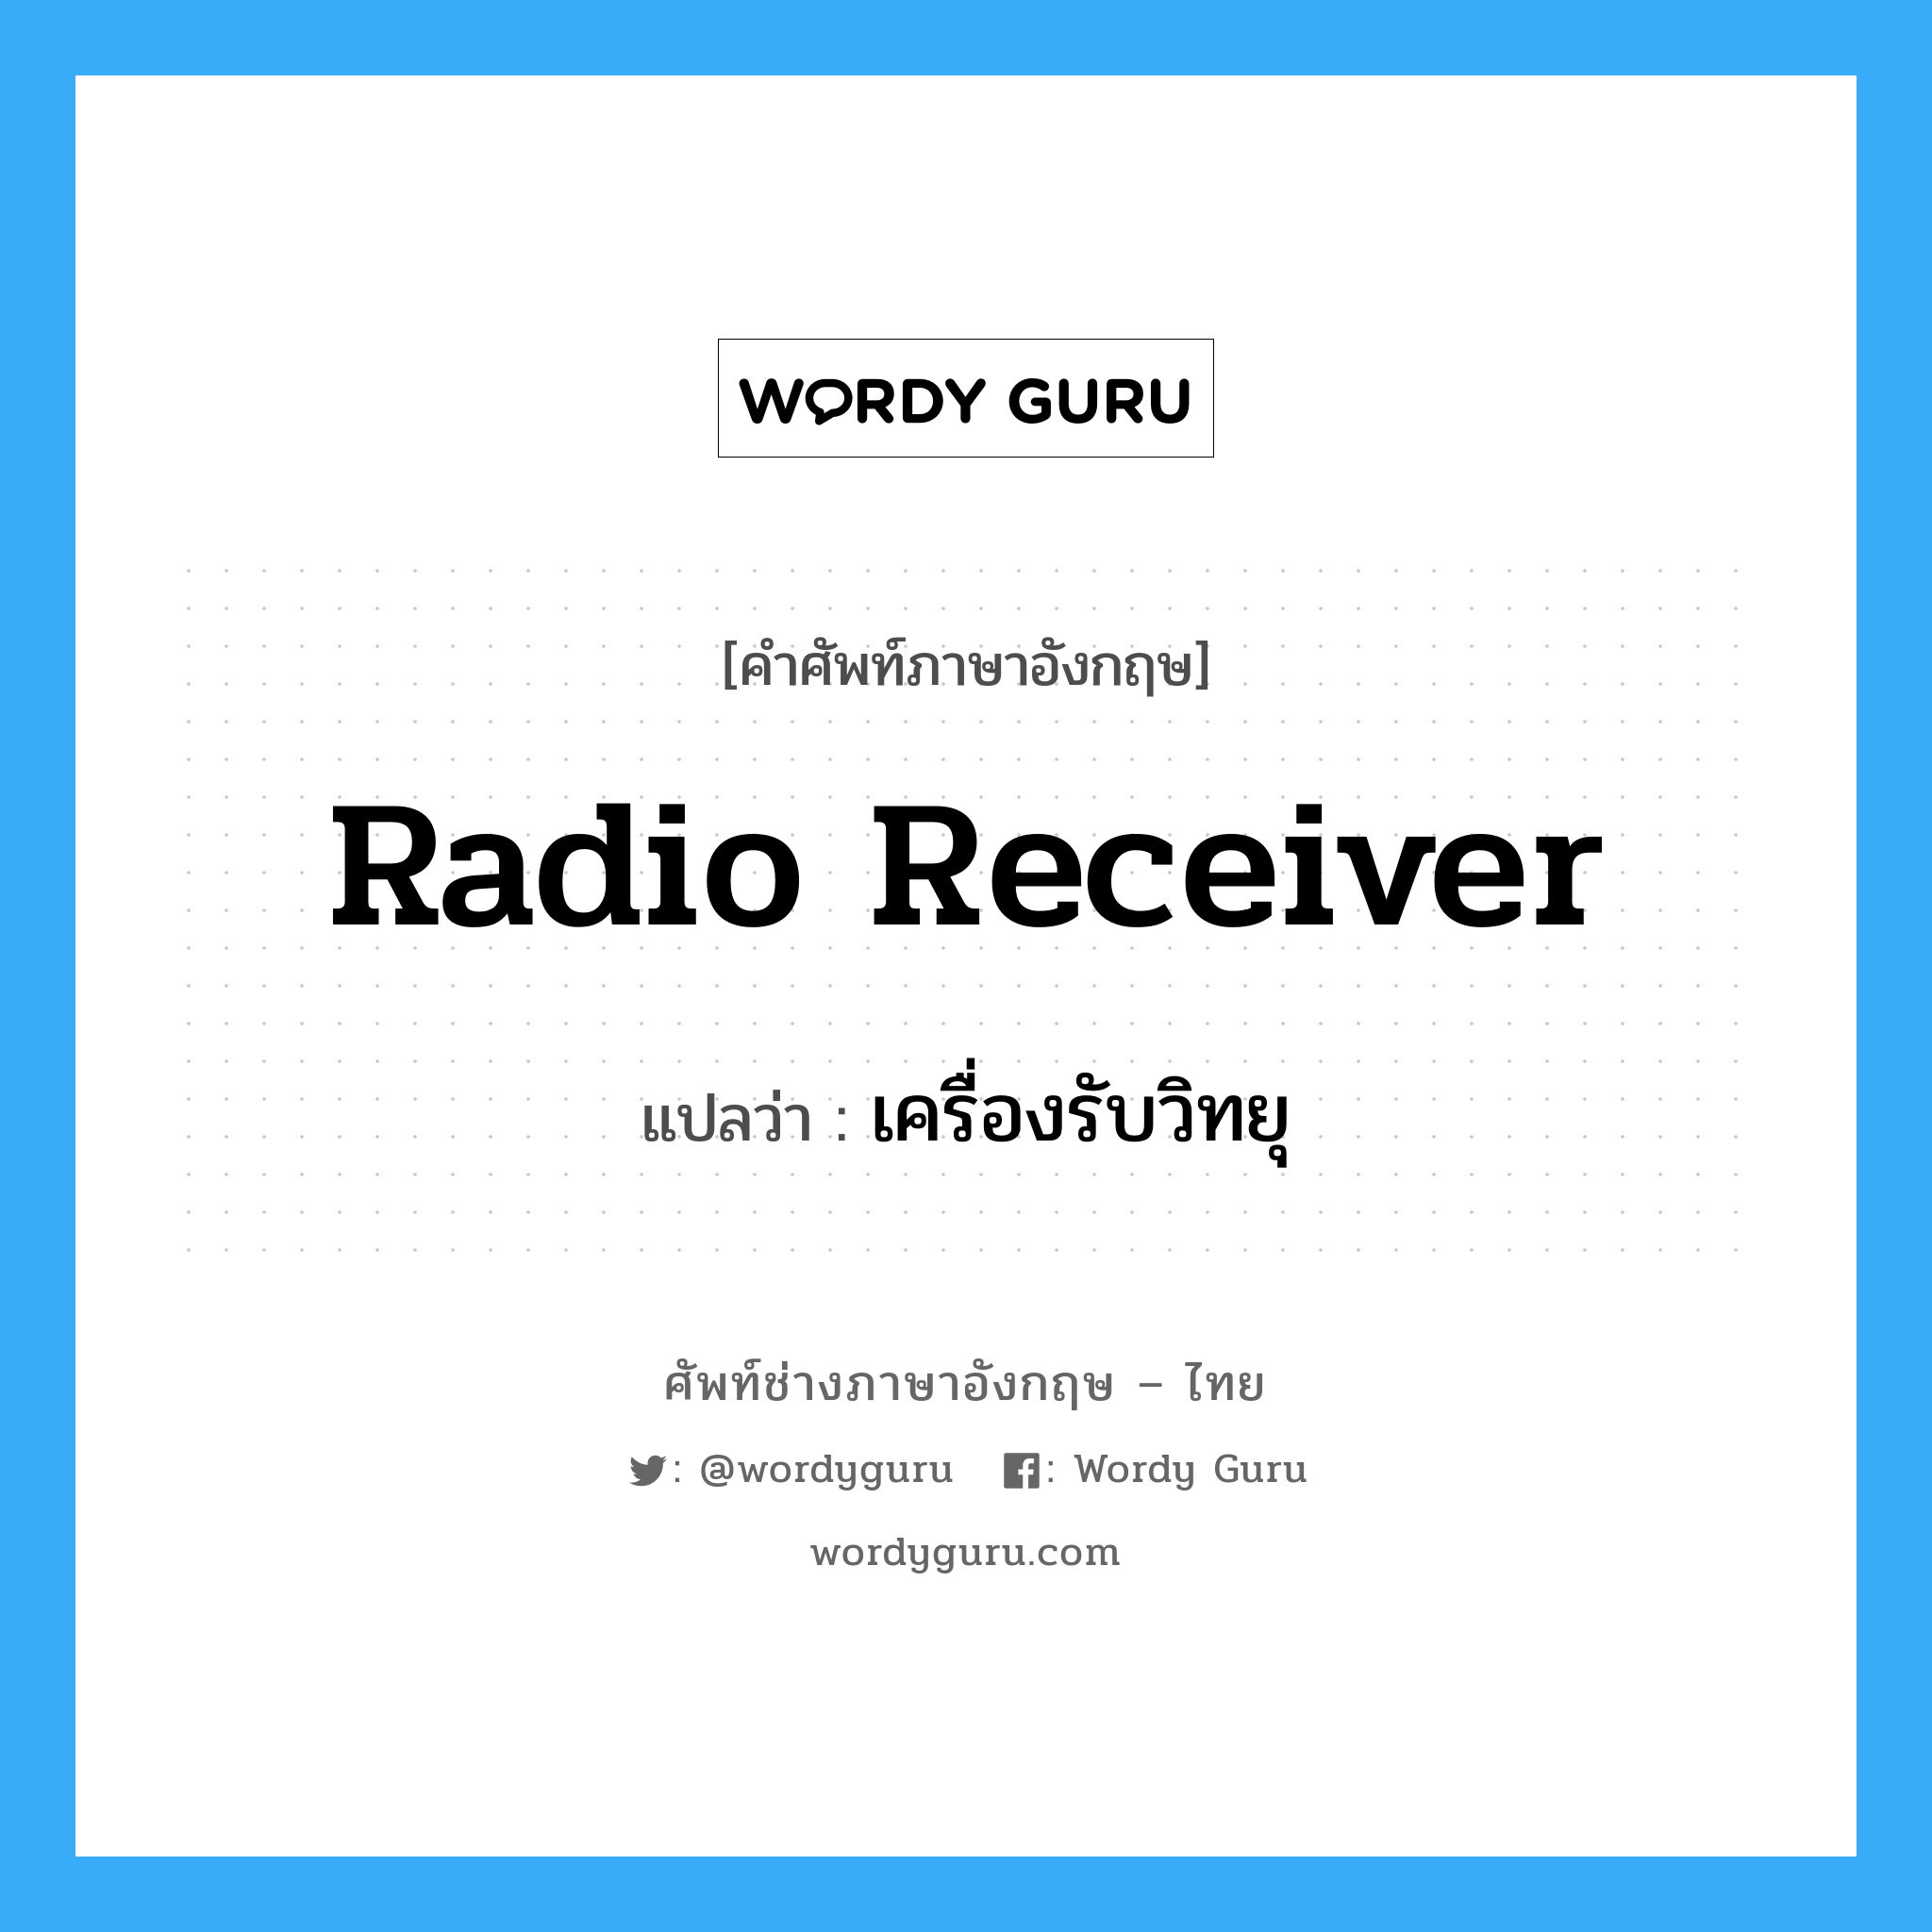 เครื่องรับวิทยุ ภาษาอังกฤษ?, คำศัพท์ช่างภาษาอังกฤษ - ไทย เครื่องรับวิทยุ คำศัพท์ภาษาอังกฤษ เครื่องรับวิทยุ แปลว่า radio receiver